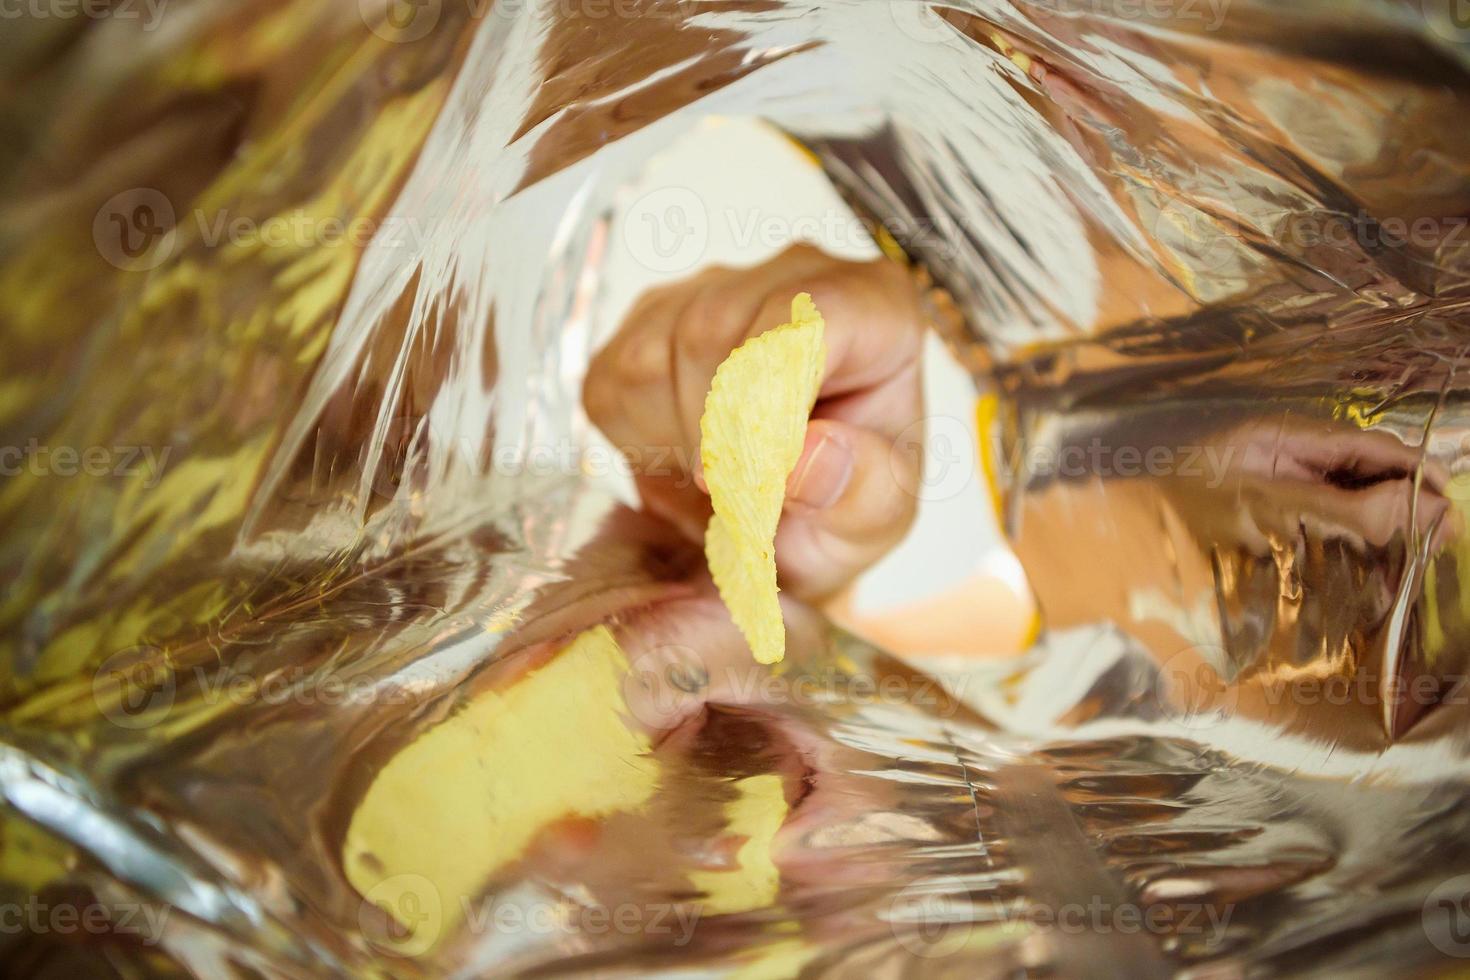 Sostenga a mano papas fritas dentro de una bolsa de aluminio para refrigerios foto